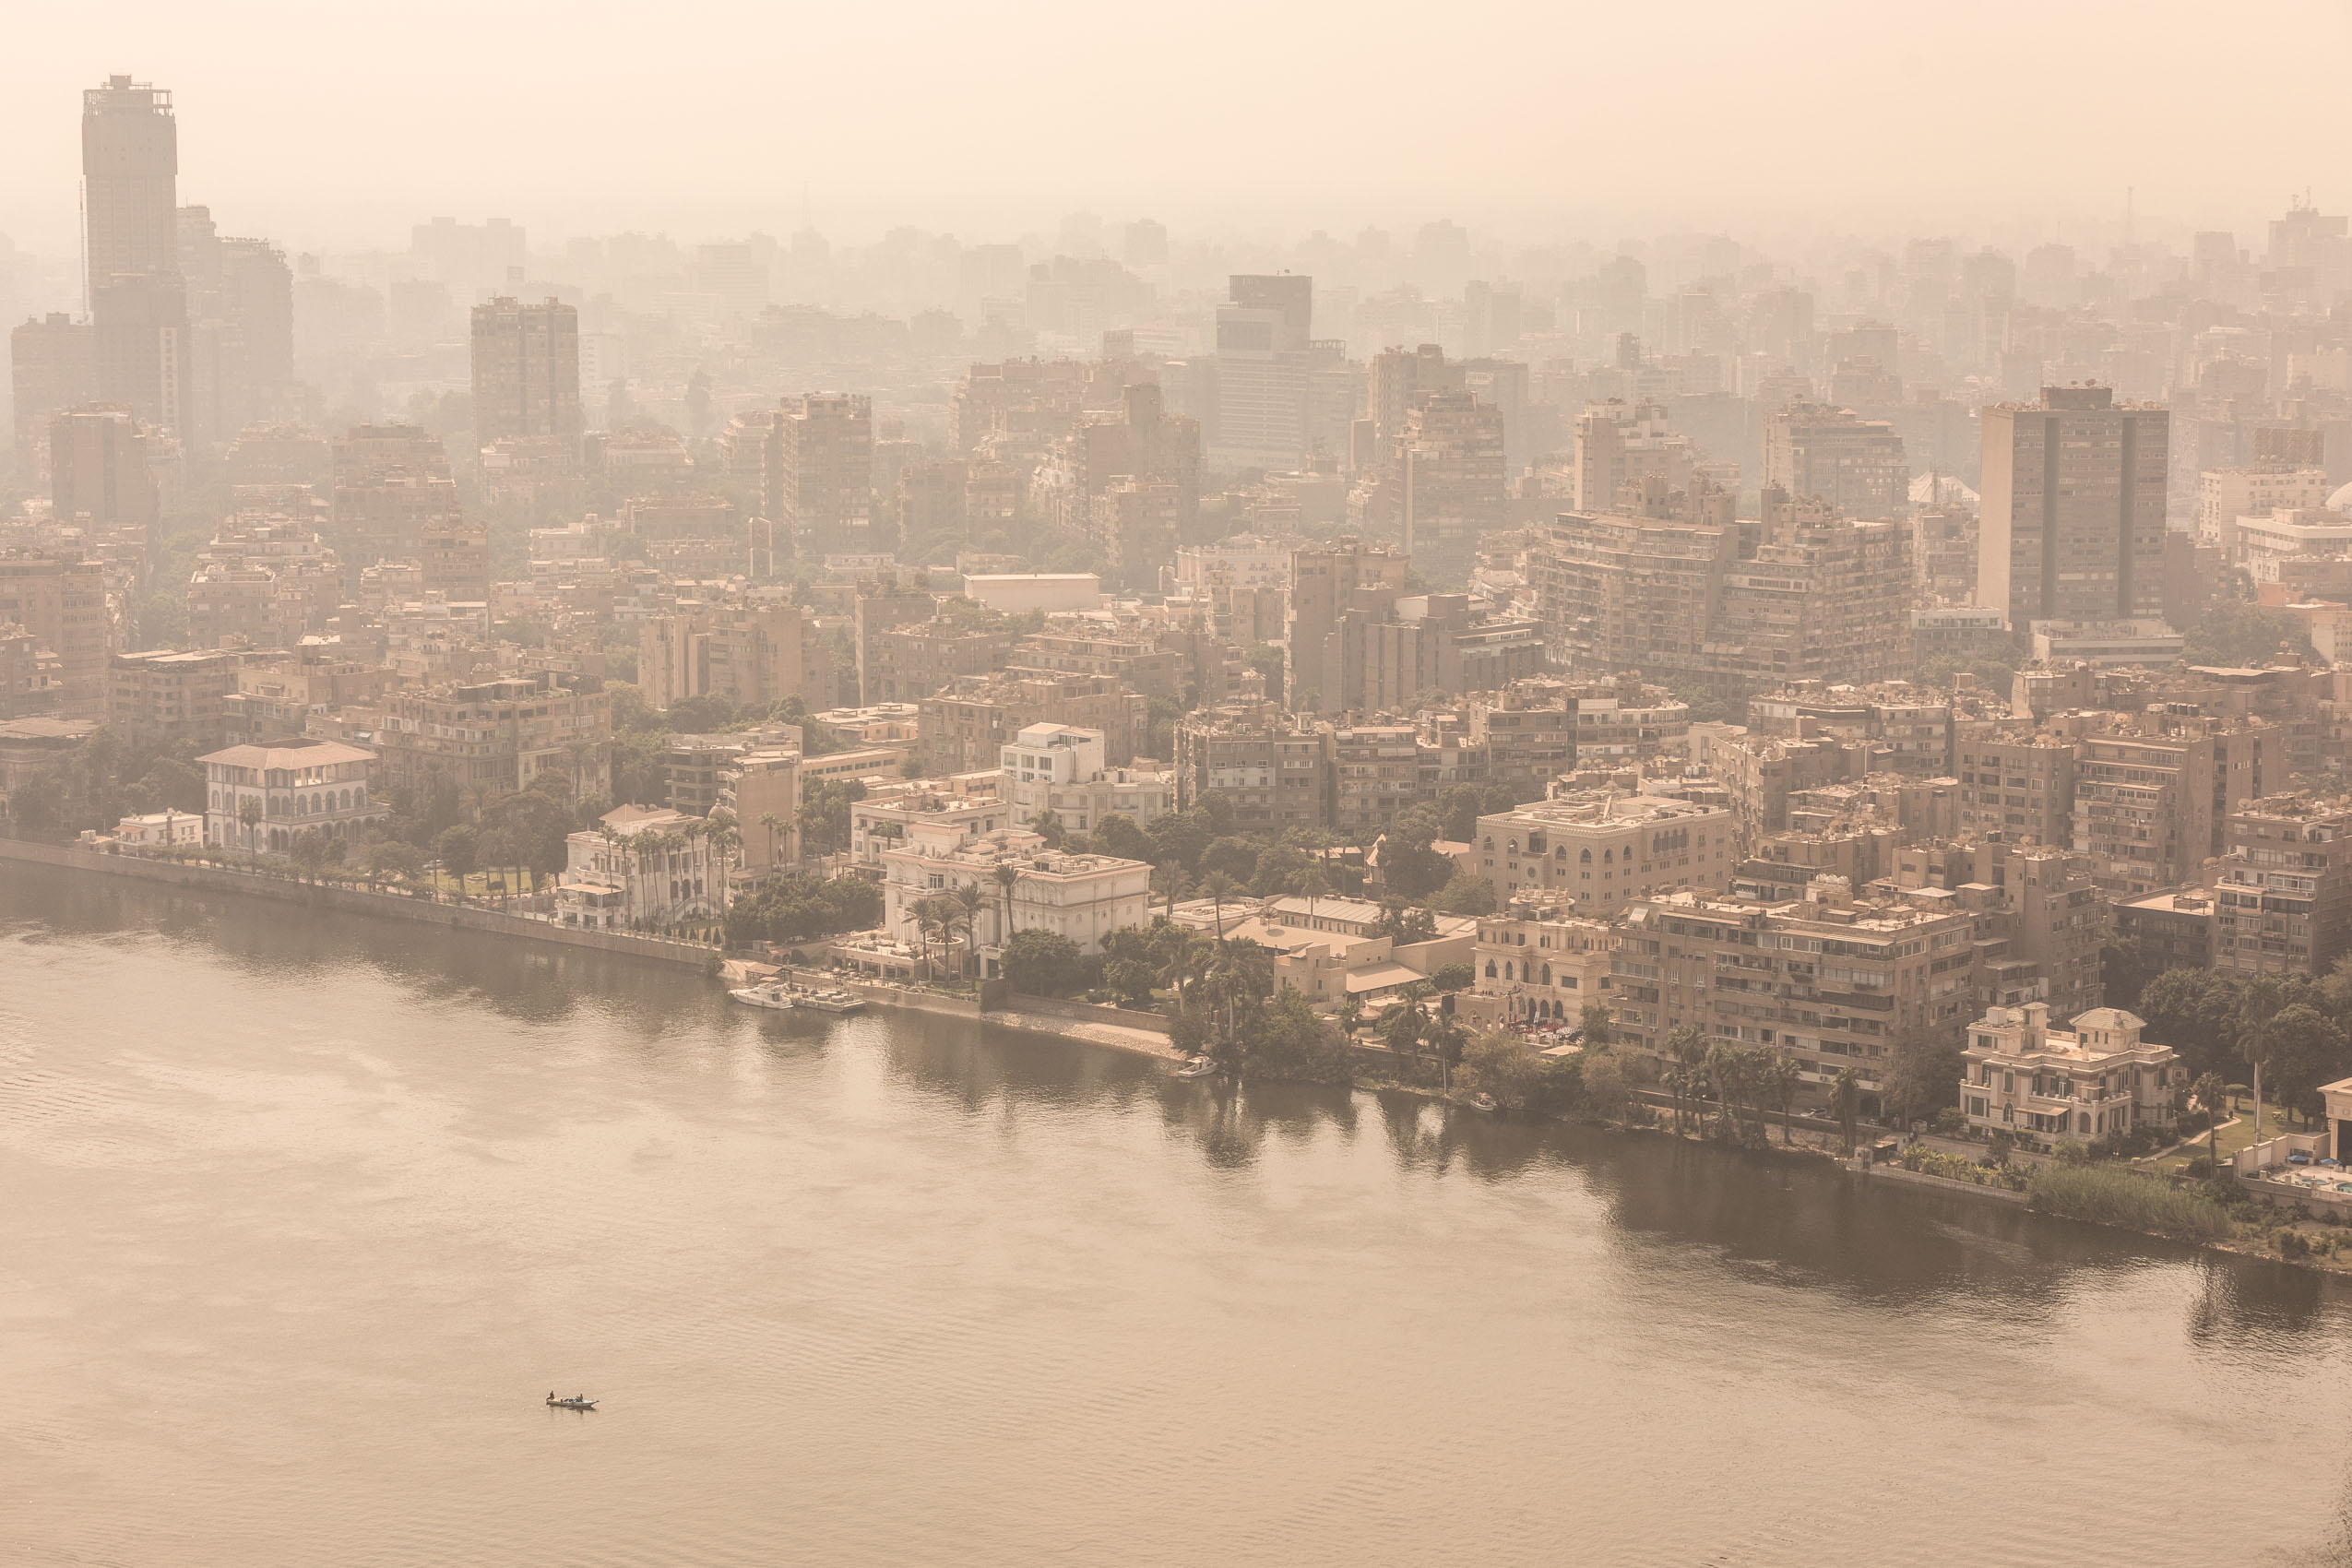 Cairo Egypt city aerial